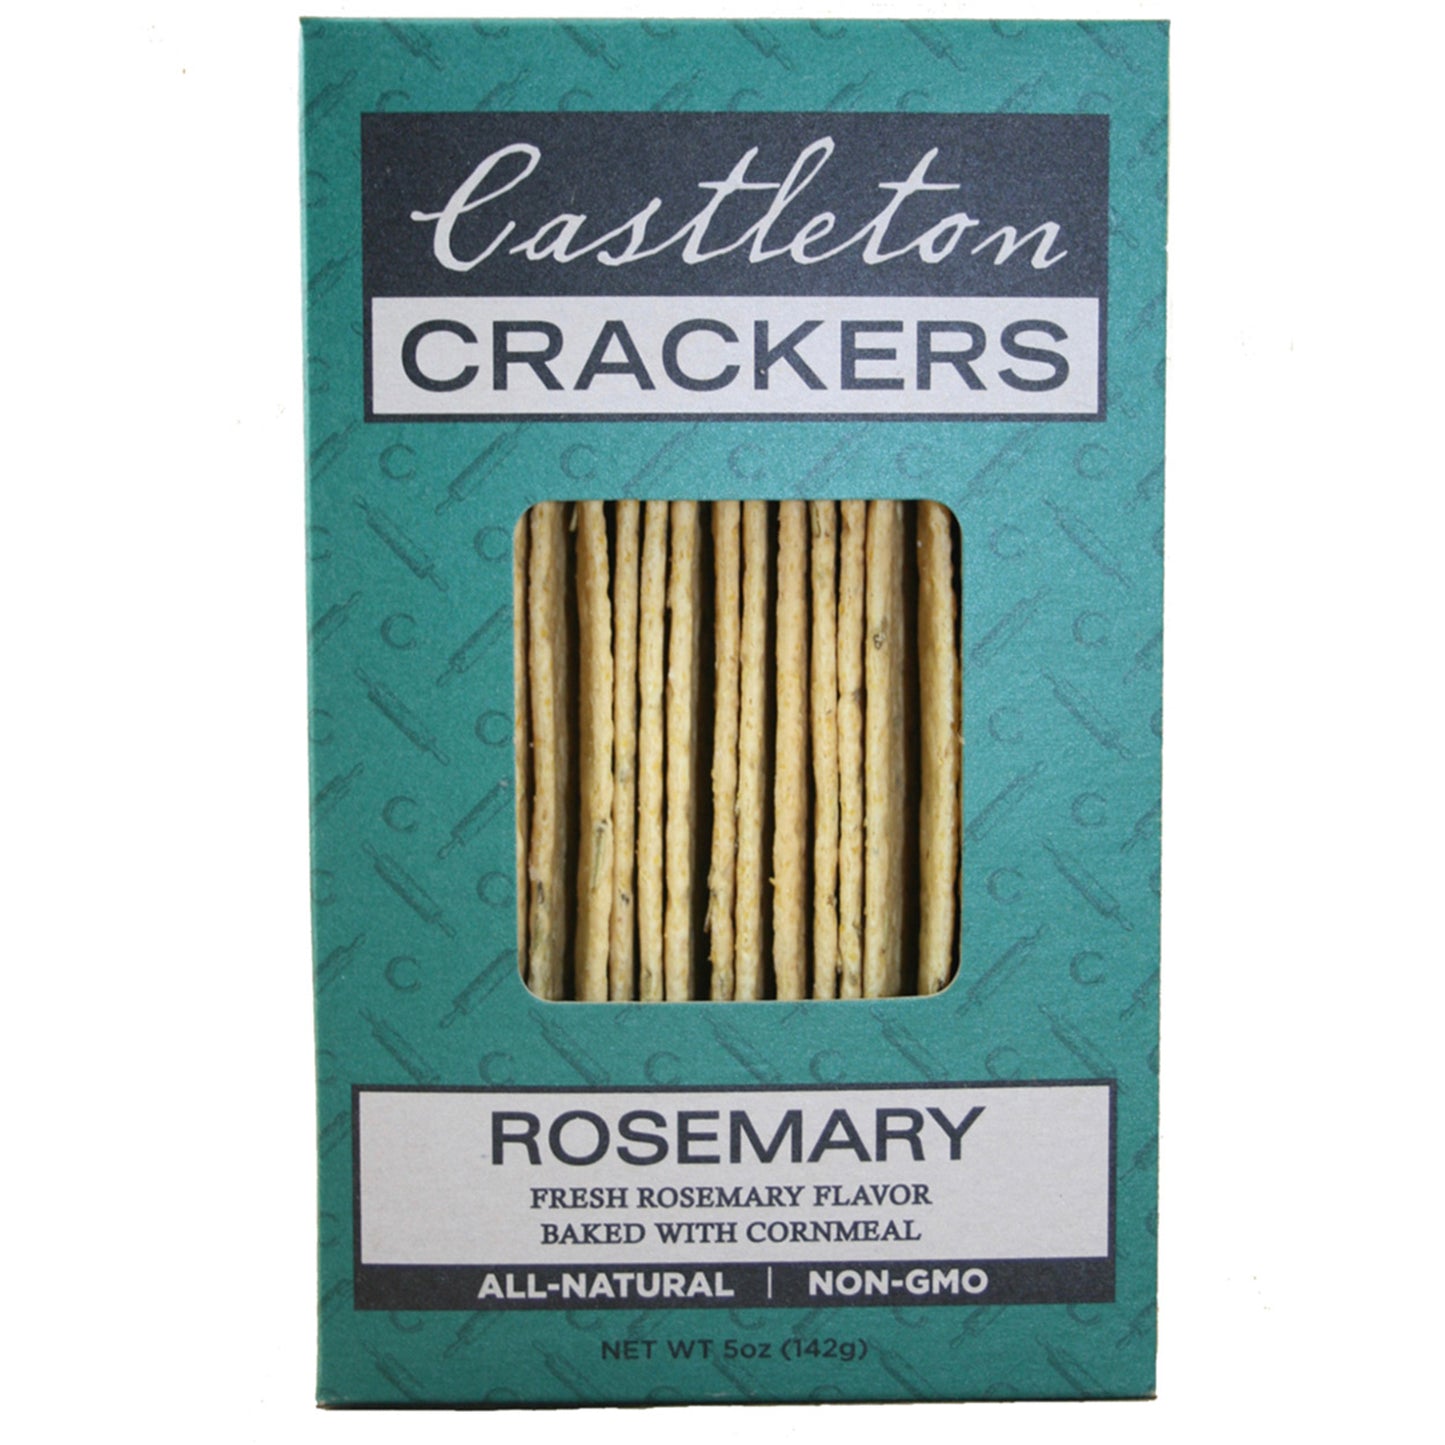 Castleton Crackers' Rosemary